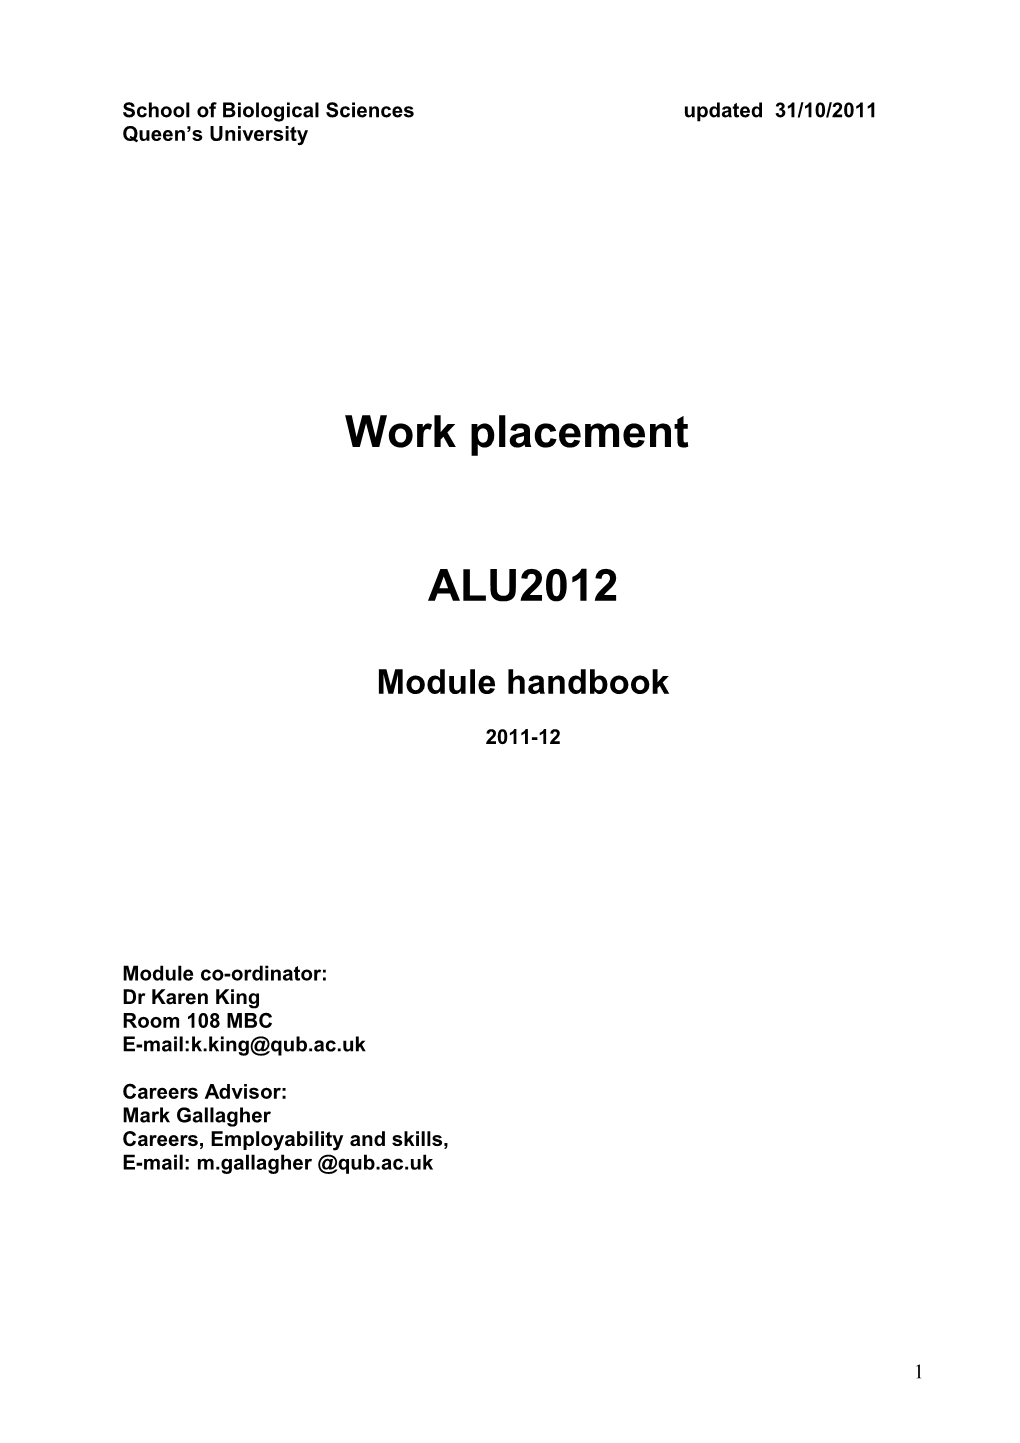 Work Placement Handbook 2010-11